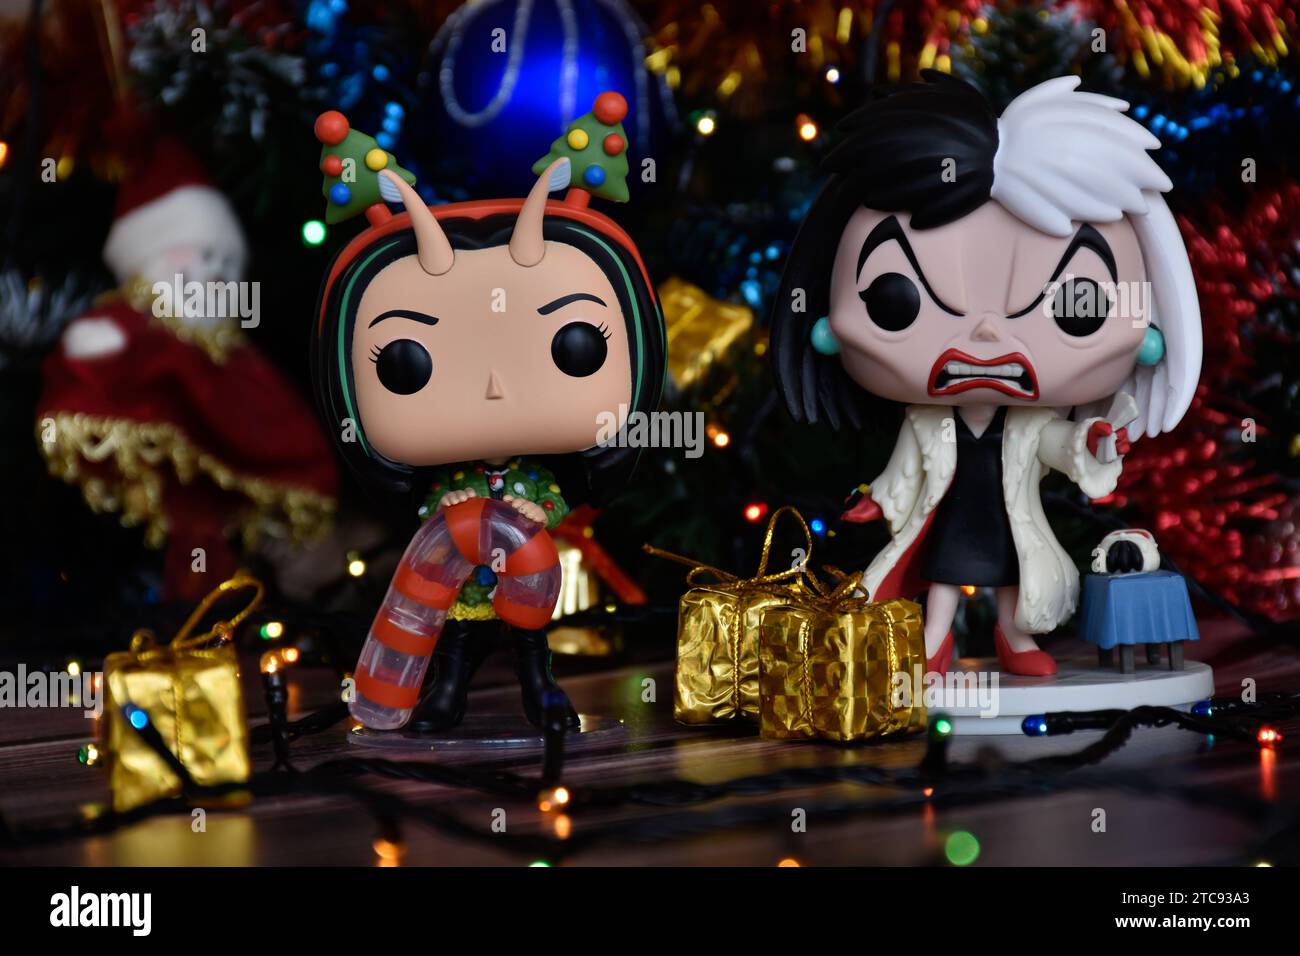 Funko Pop Actionfiguren von Mantis von Guardians of the Galaxy und Disney-Bösewicht Cruella de Vil. Weihnachtsbaum, Geschenkboxen, bunte Lichter. Stockfoto